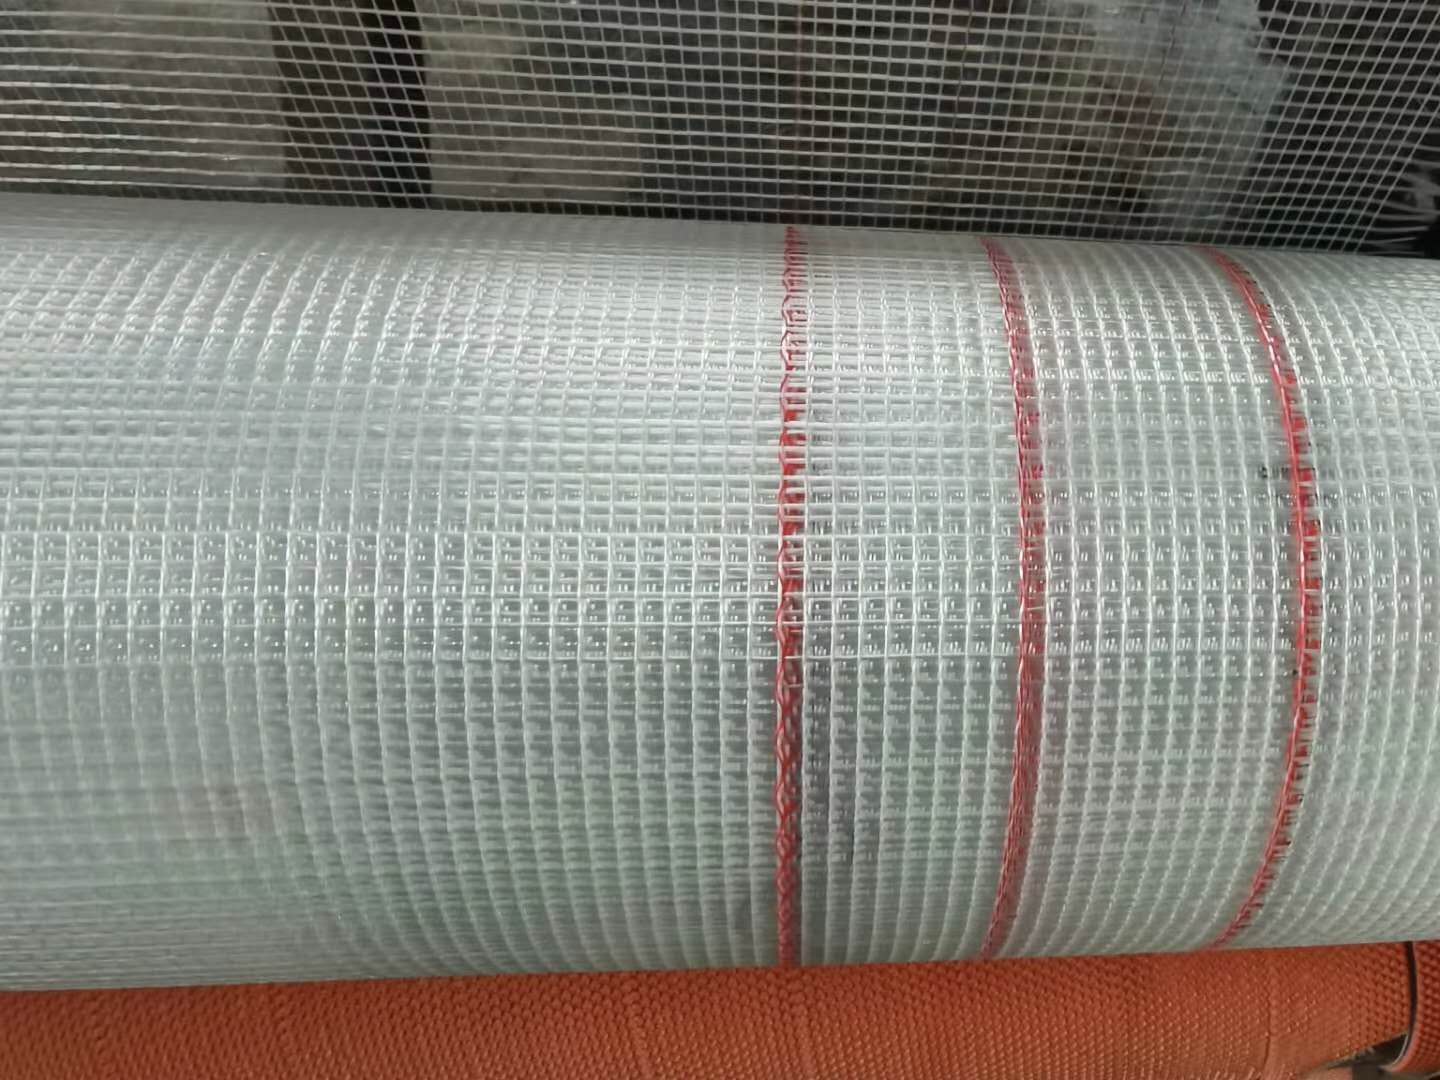 上海增祥金属丝网制品有限公司